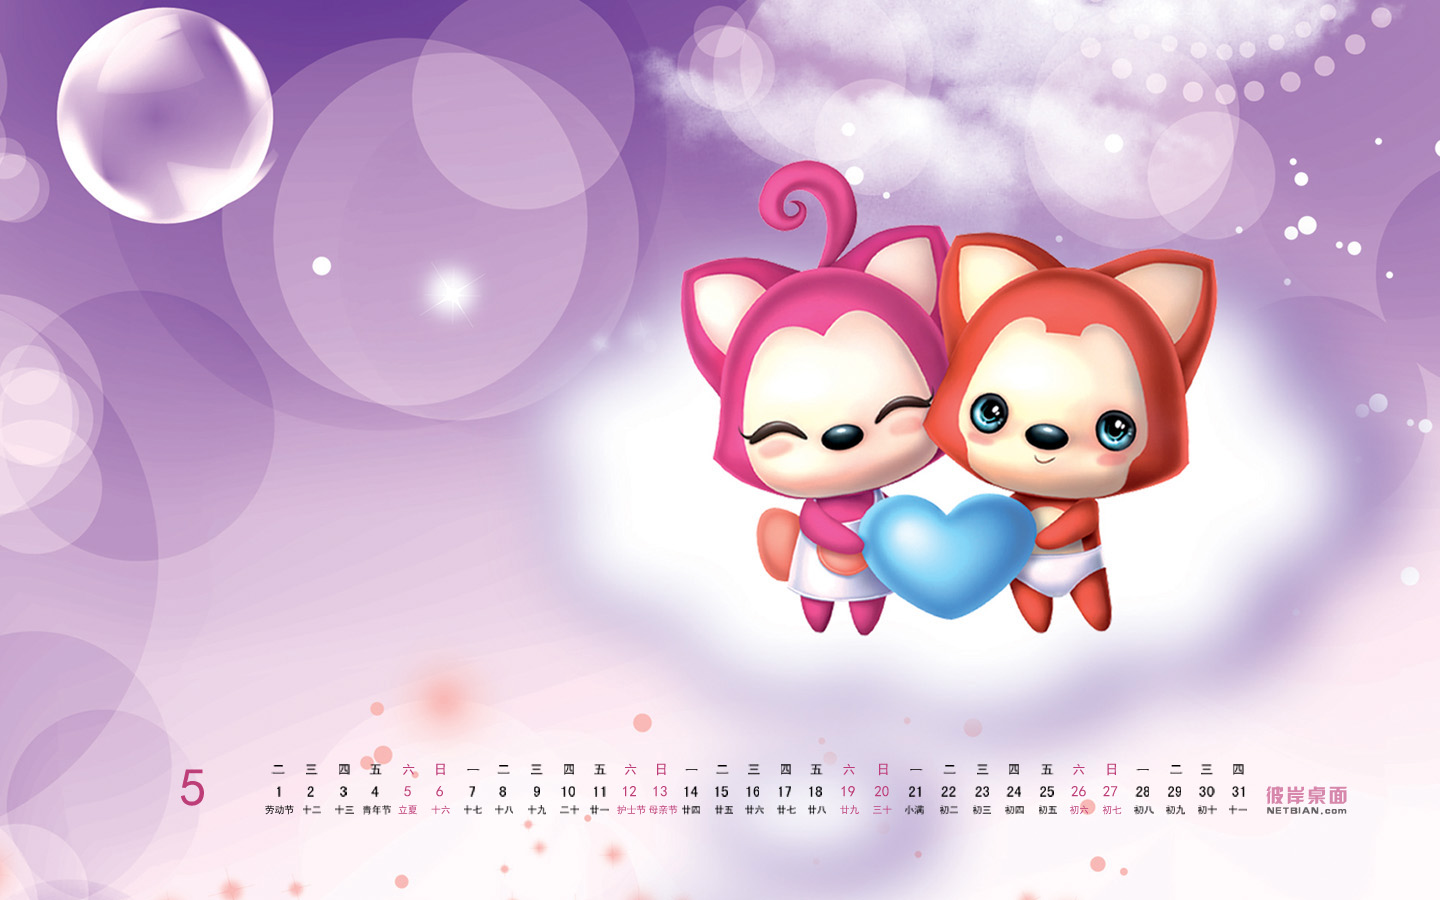 Ari and Taozi May 2012 calendar wallpaper